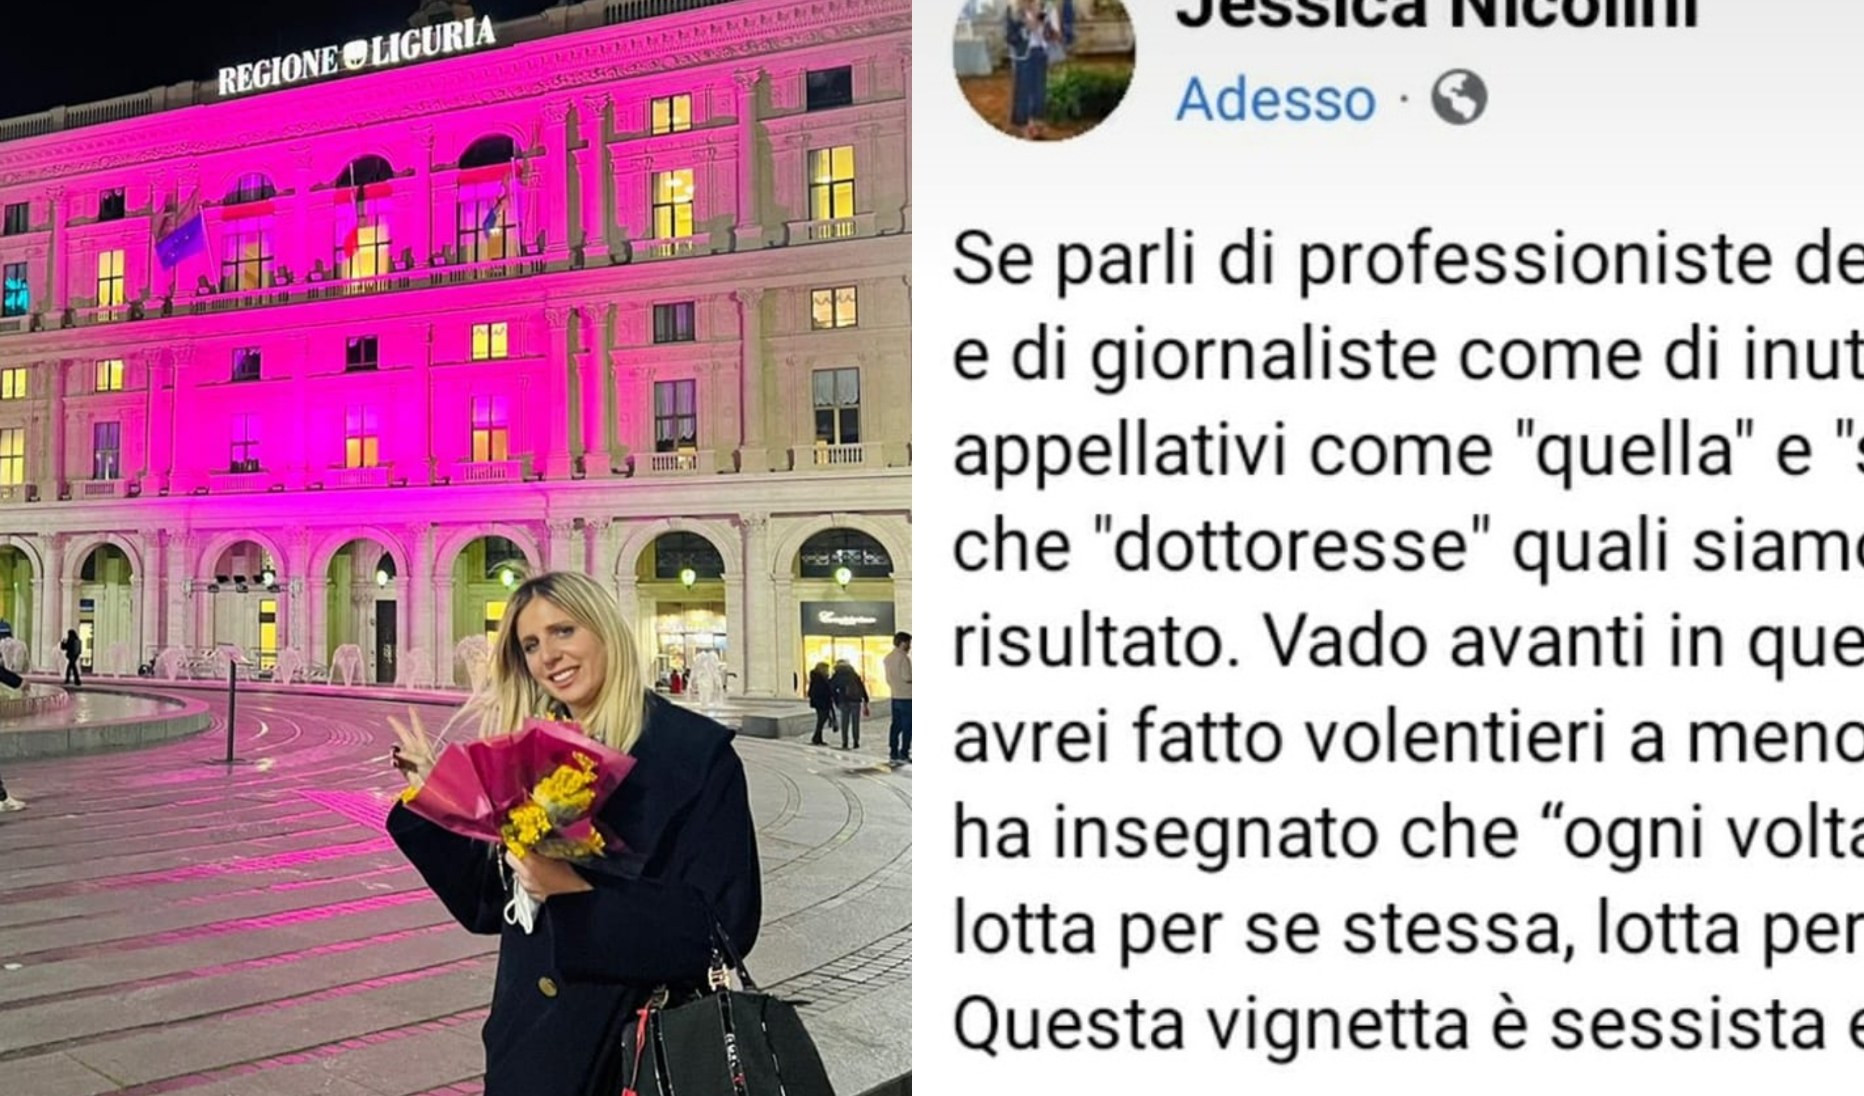 Attacco sessista a ufficio stampa di Toti, autore del meme si scusa e lo cancella